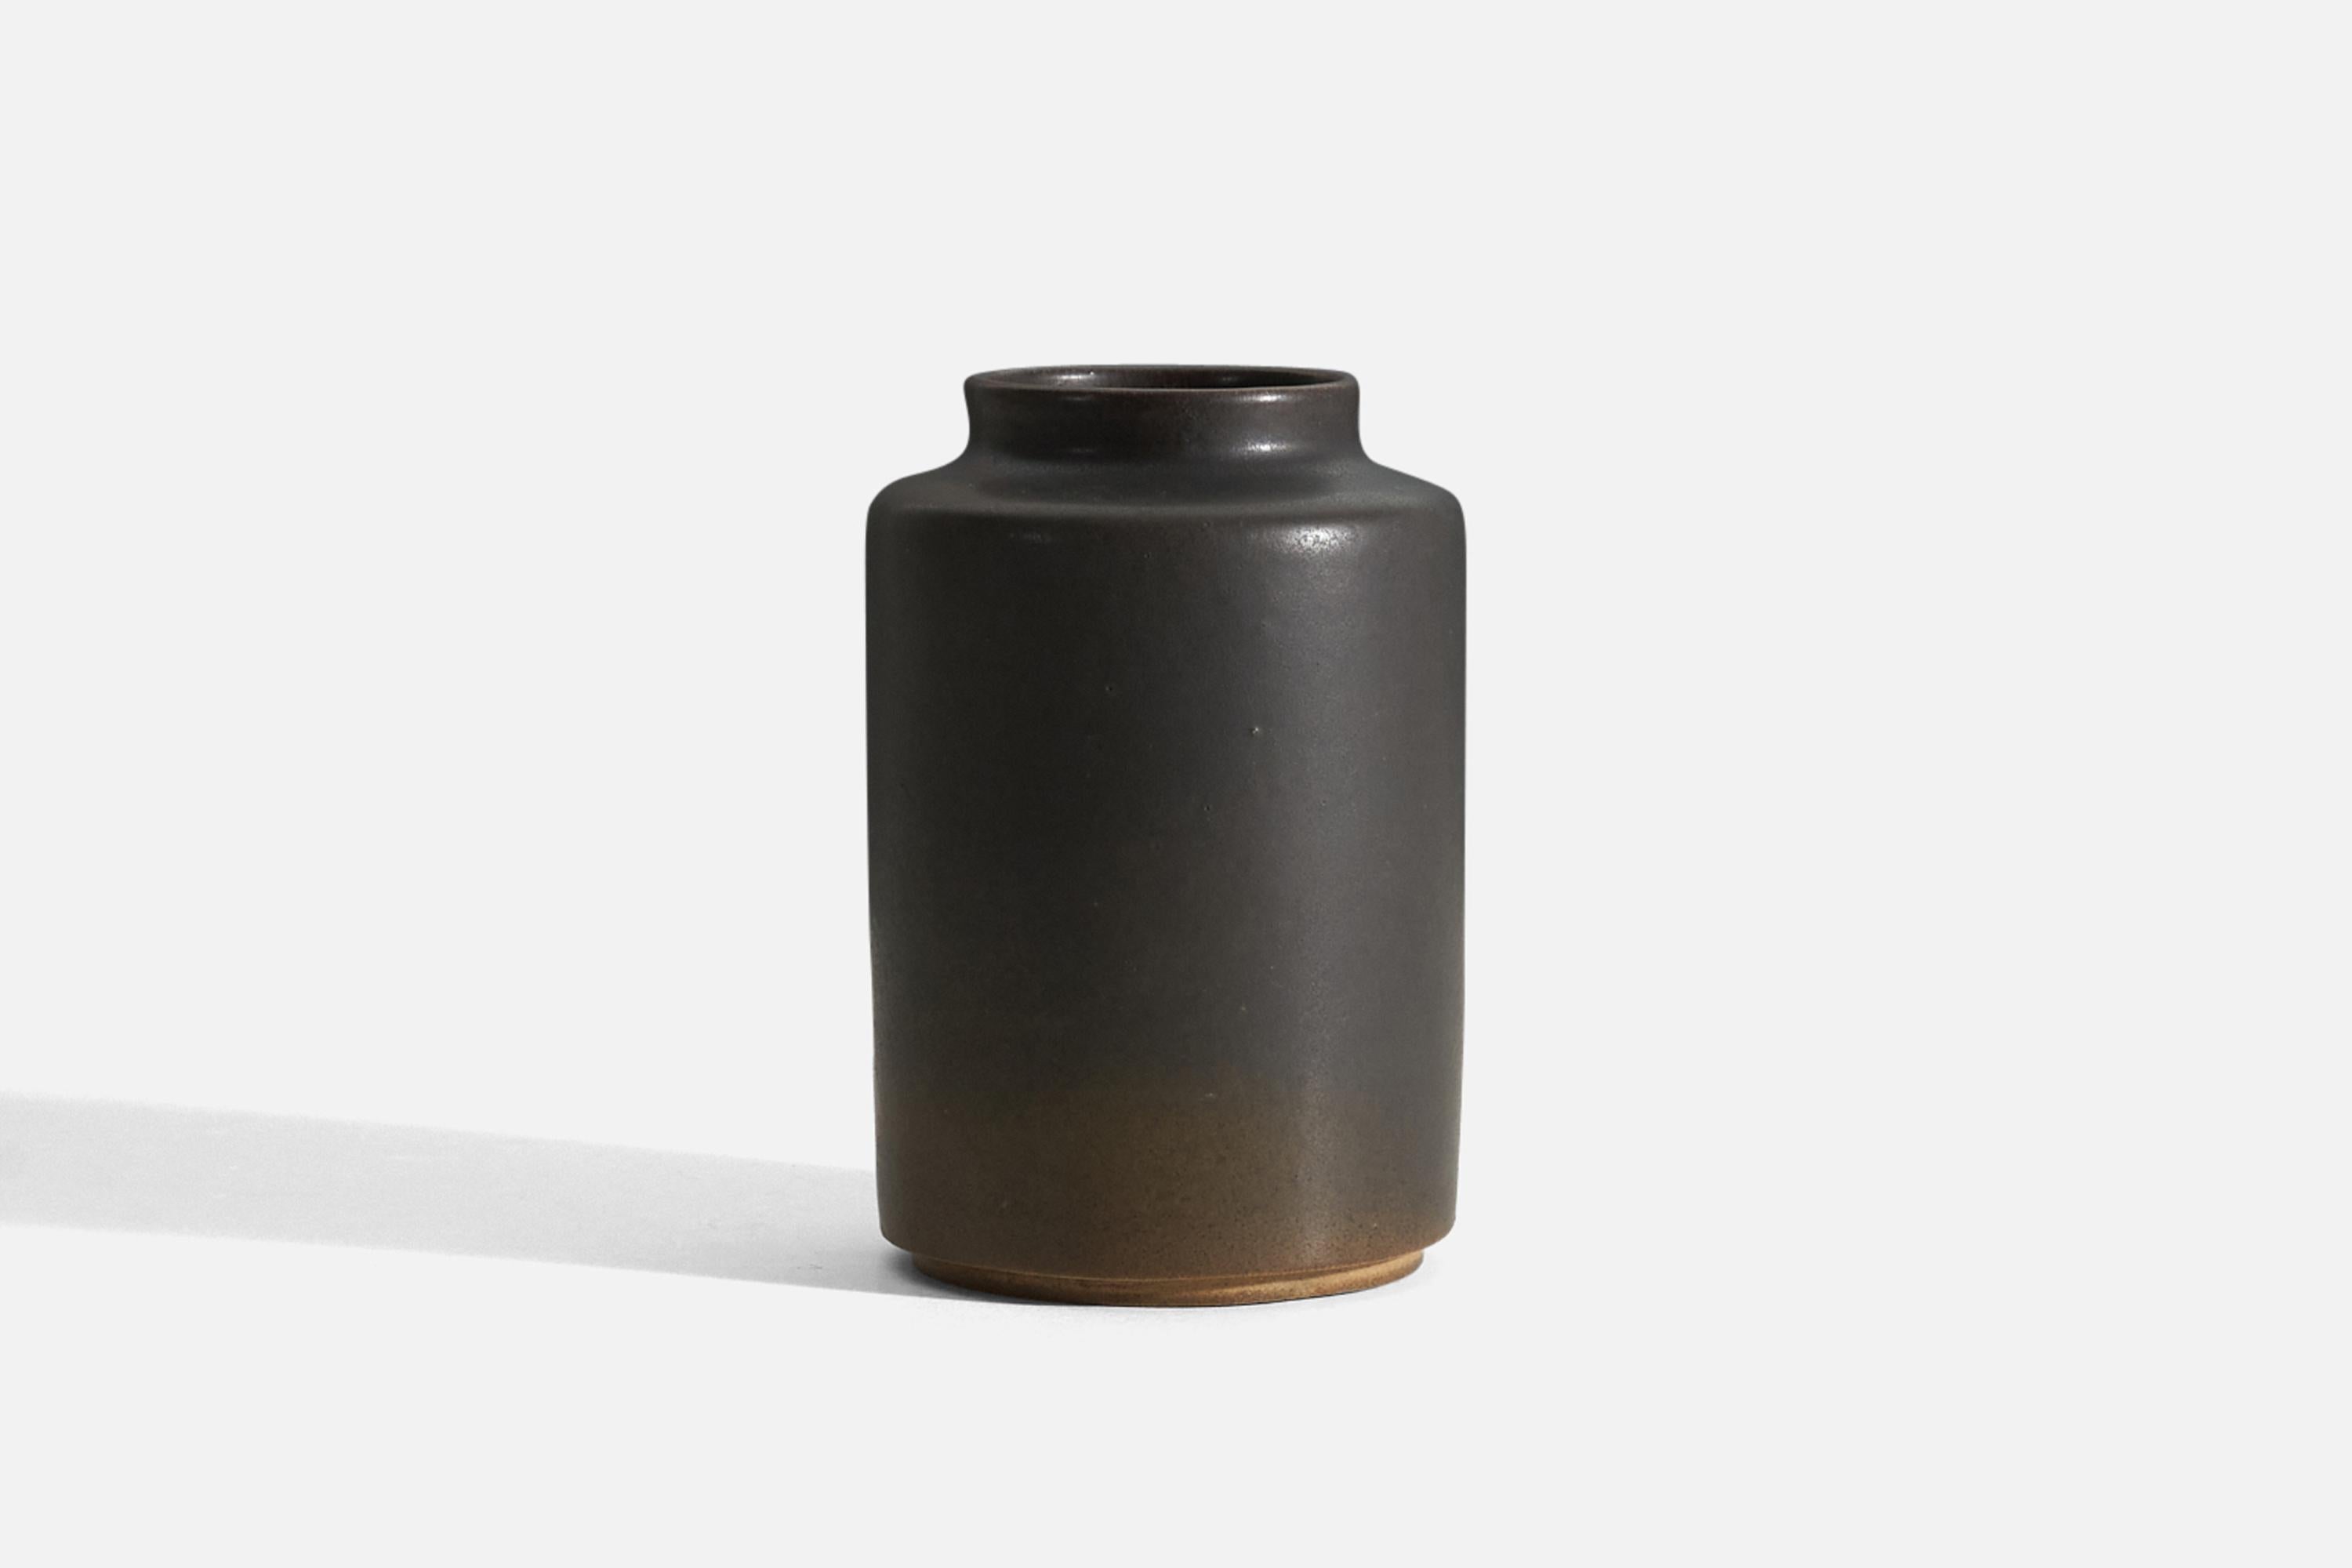 Vase en grès émaillé gris et brun, conçu et produit par A.I.C., vers les années 1960.